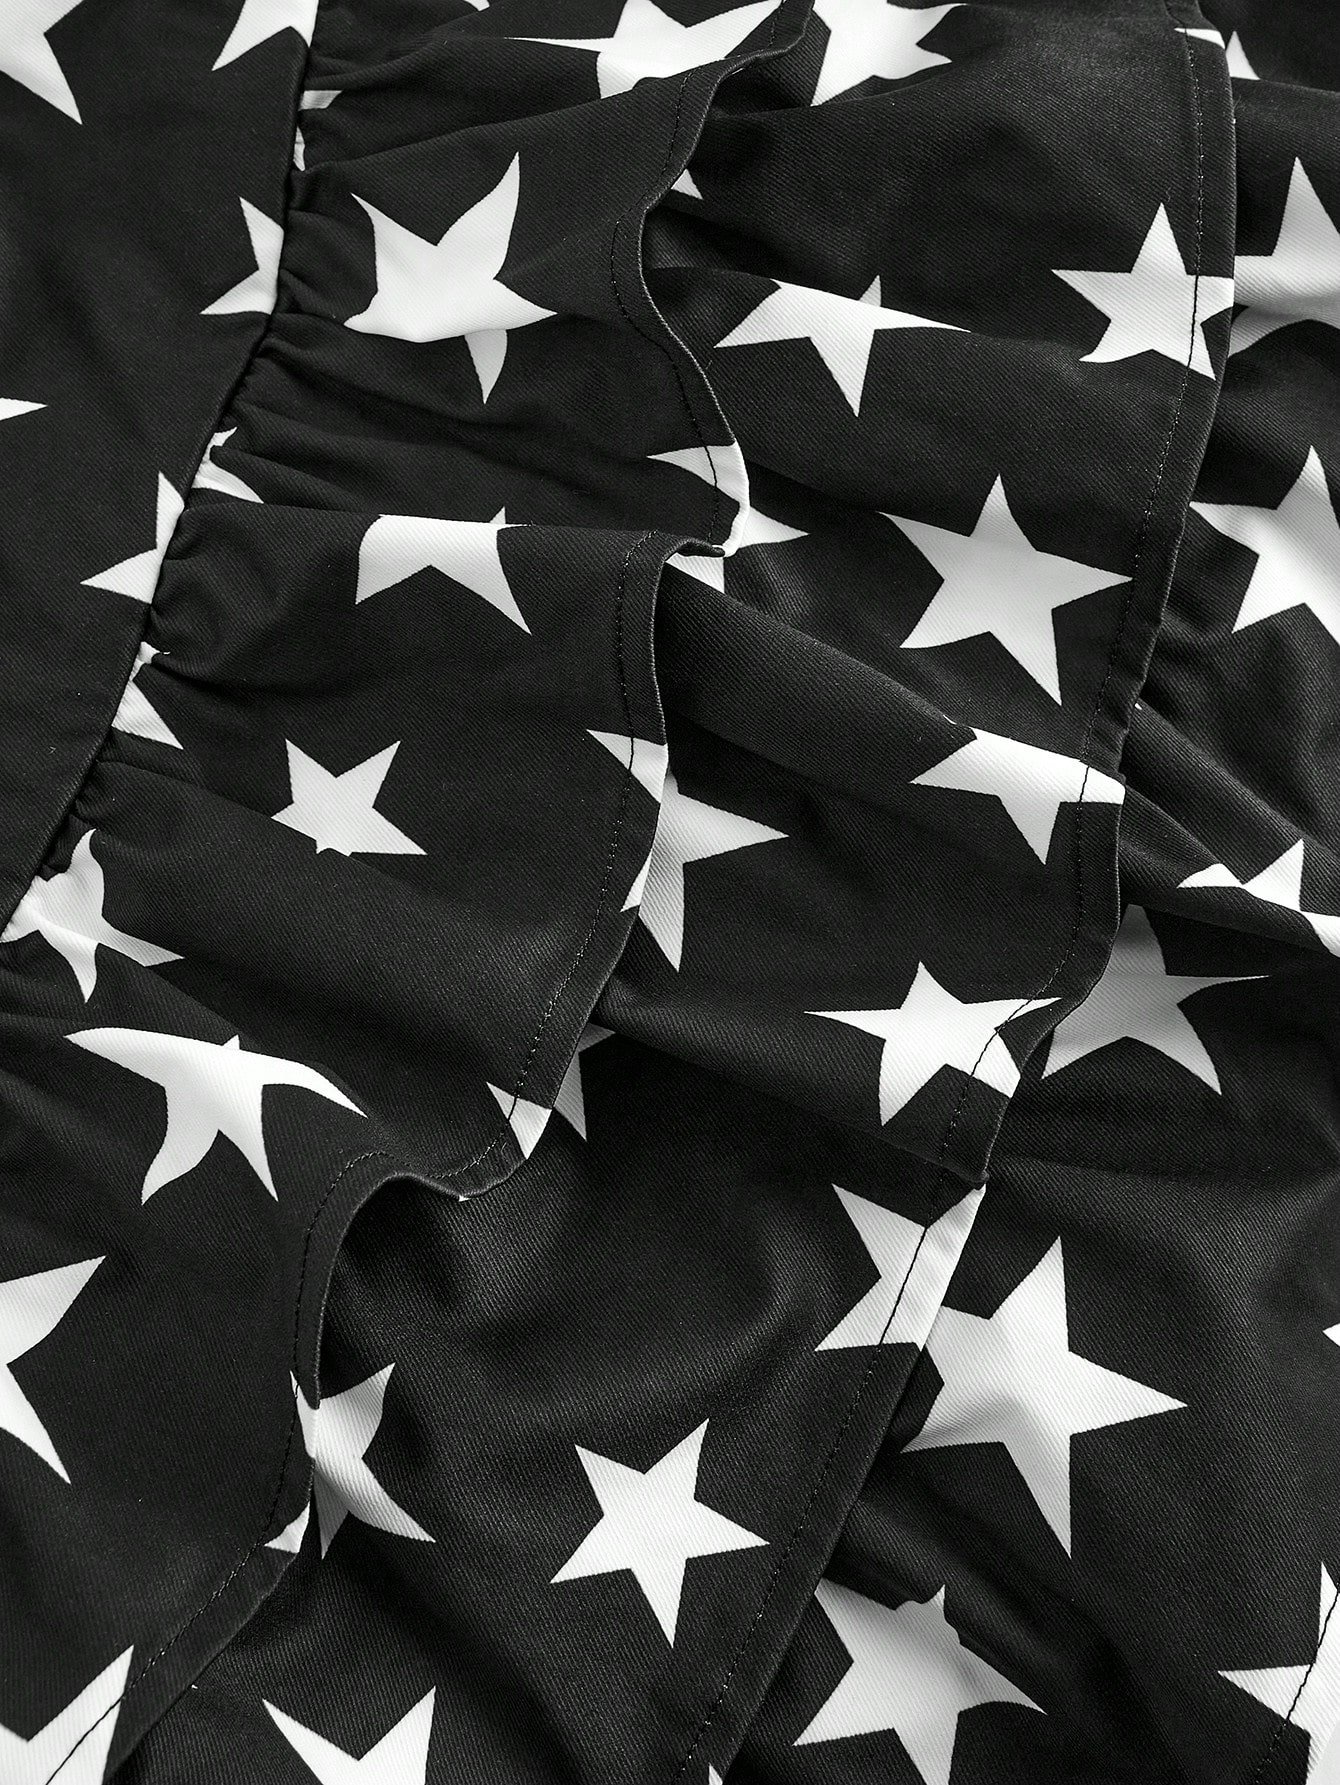 7月4日 アメリカ 女性の星プリント 黒色 ミニショートパンツ